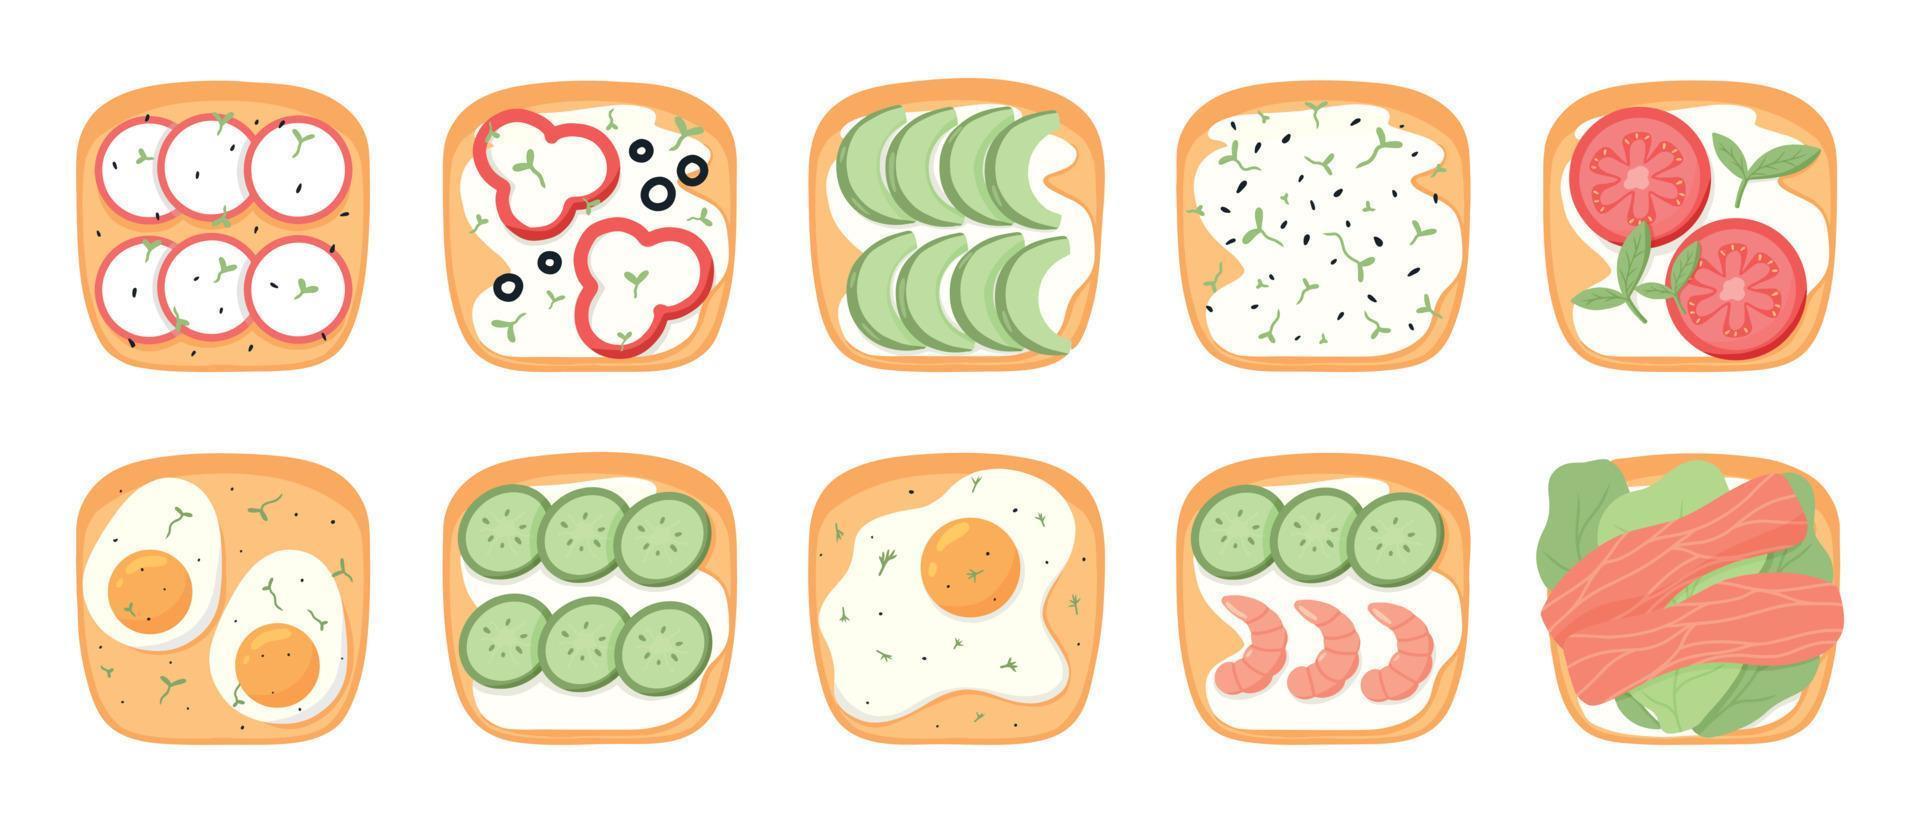 Reihe von Sandwiches mit Gemüse. toast mit eiern, tomaten, garnelen, fisch, gurken, avocado. Vektor-Illustration. gesundes Frühstück. vektor